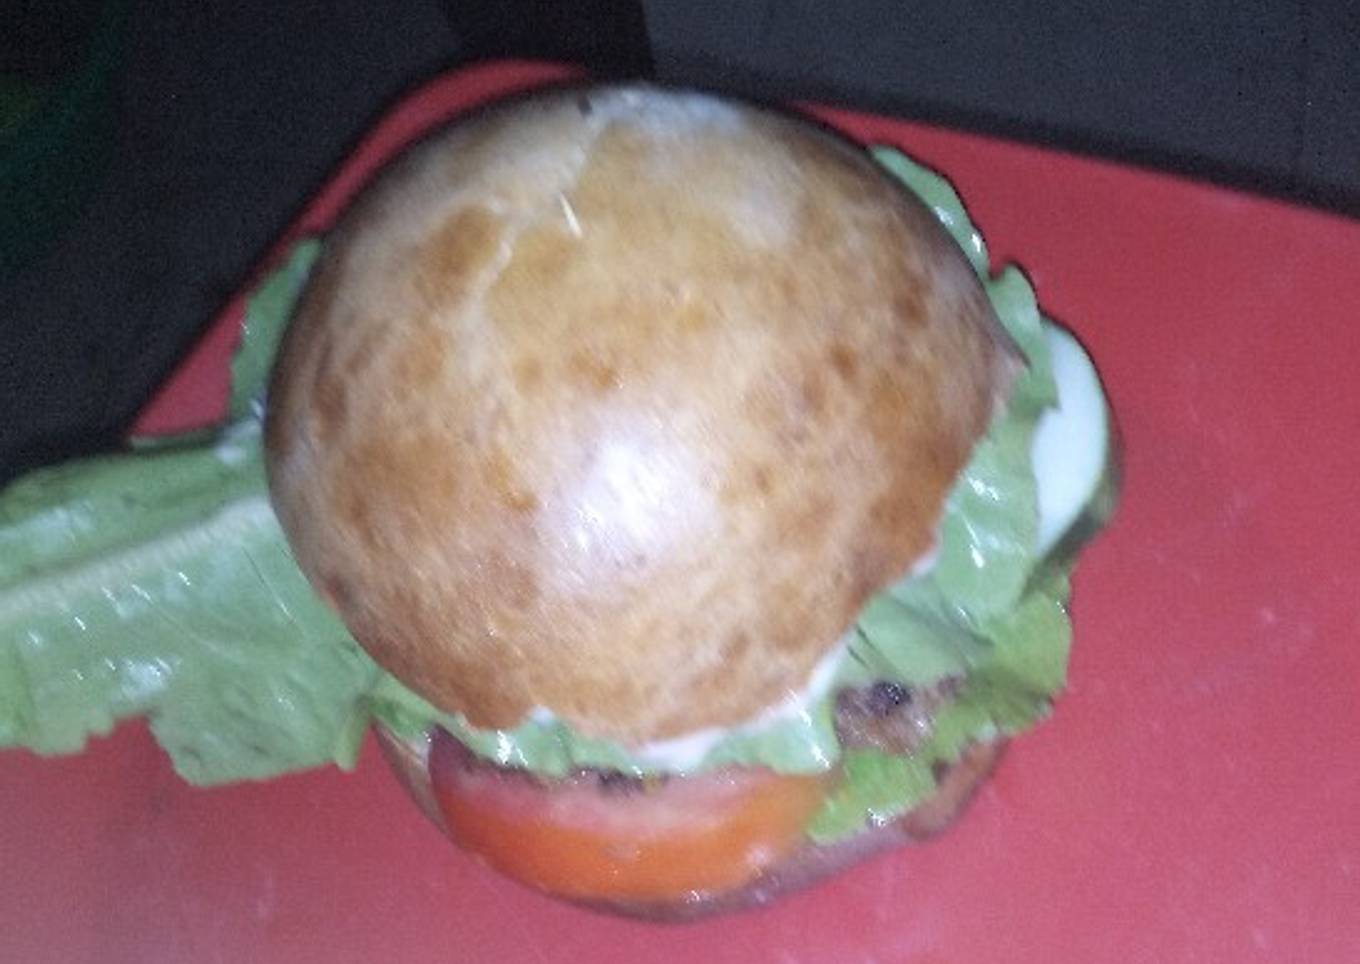 Home made burger